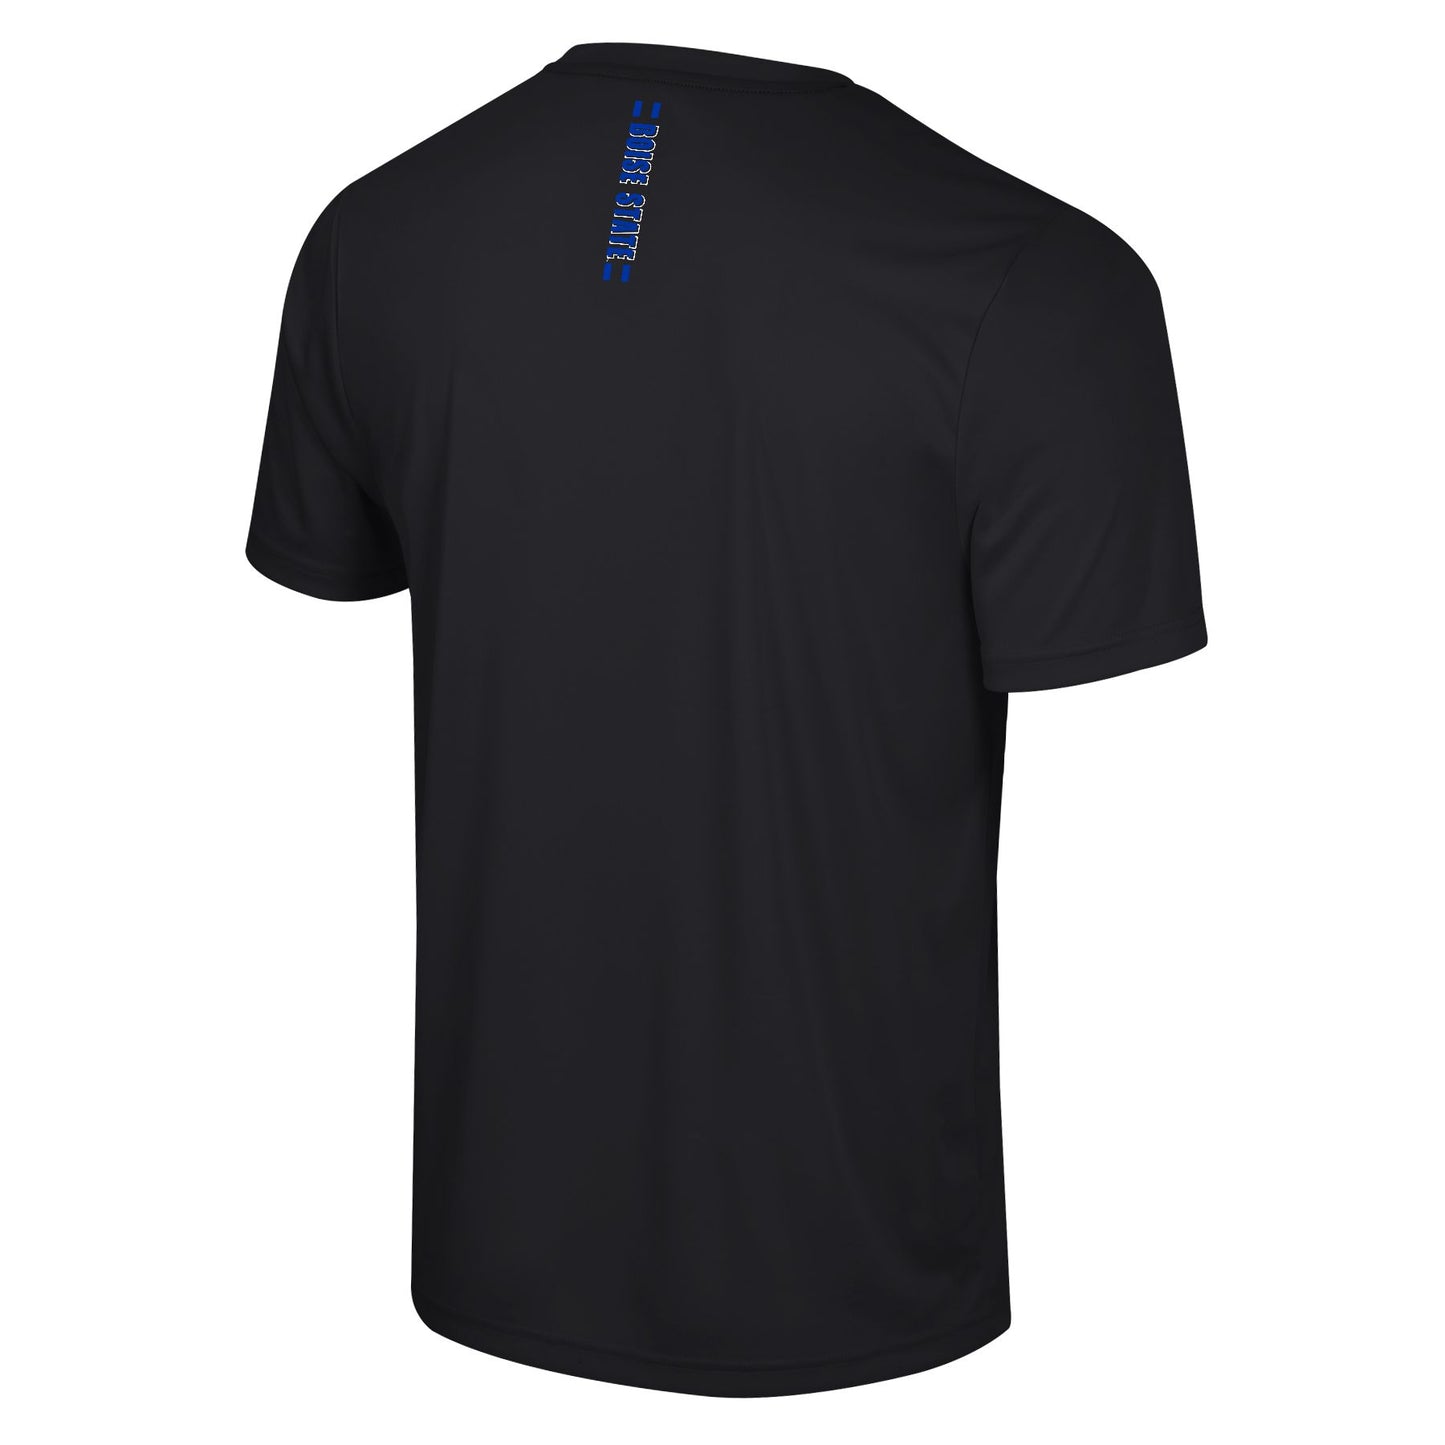 Boise State Broncos Colosseum Men's Dri-Fit T-Shirt (Black)